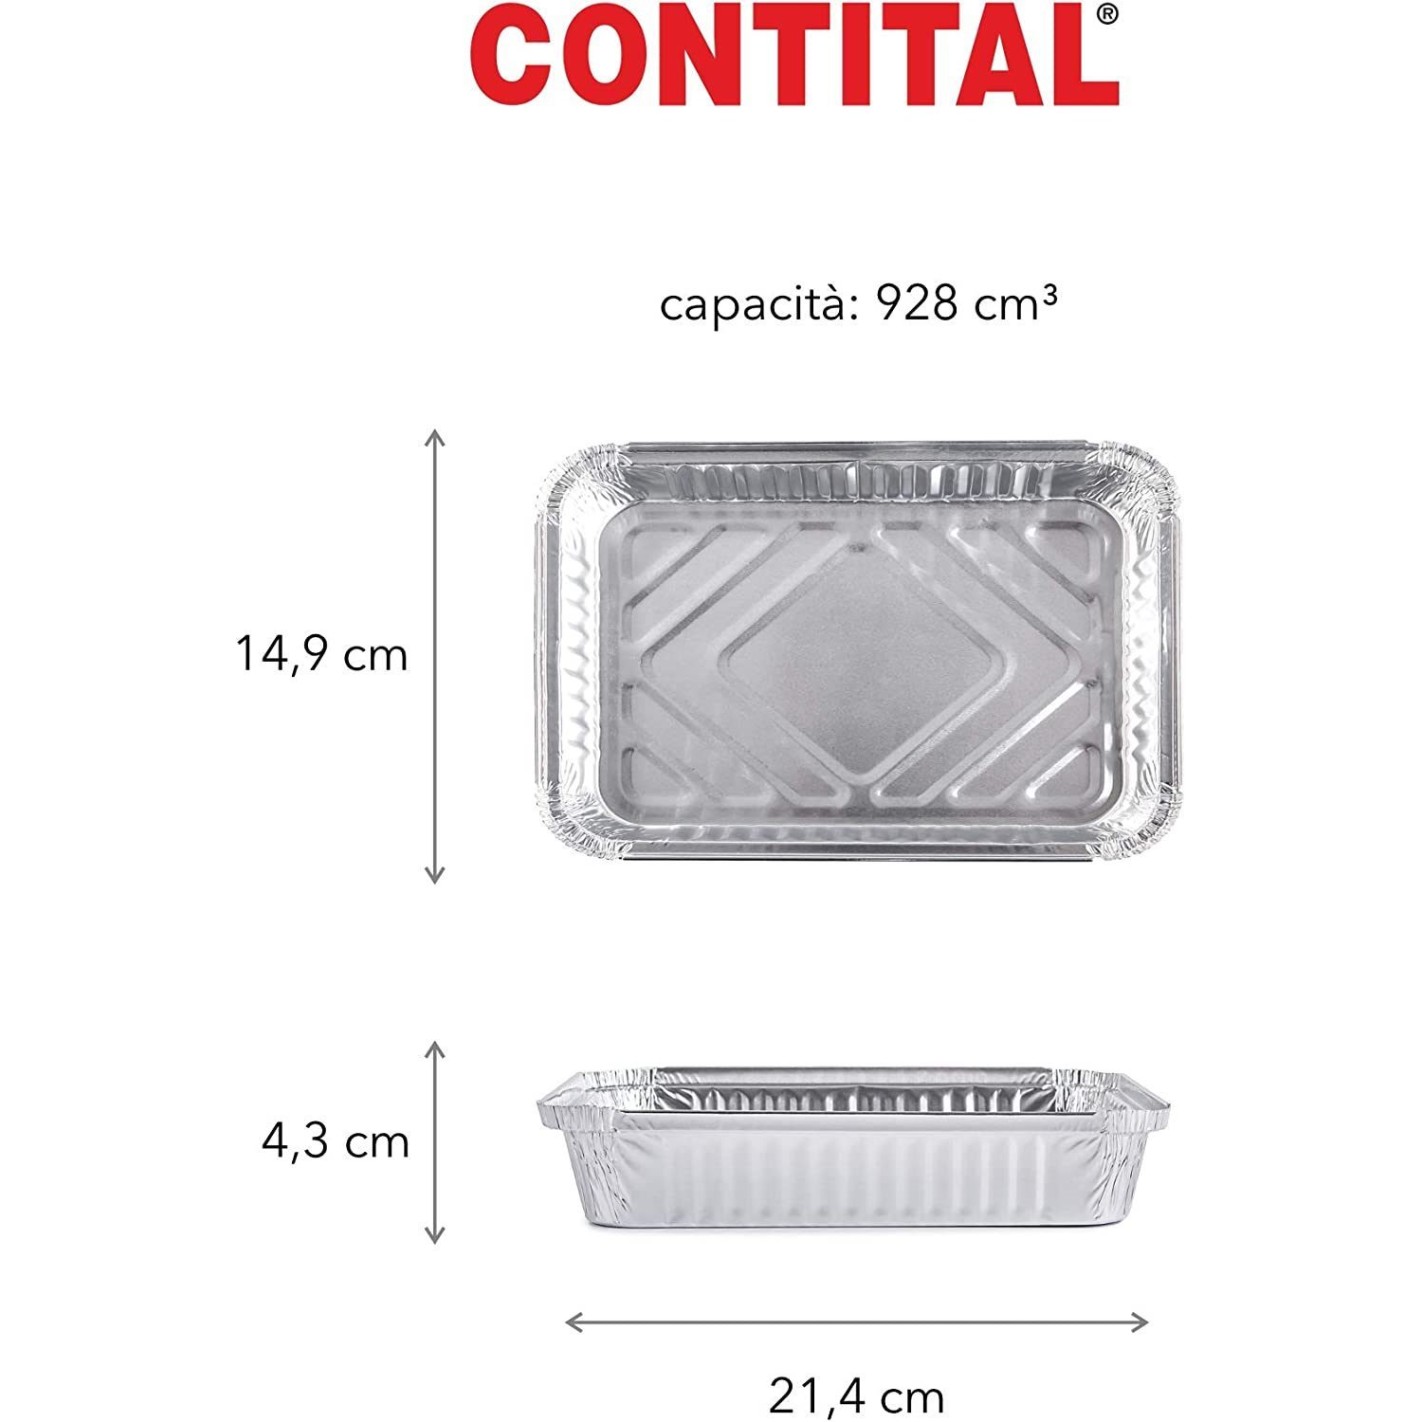 Contenitori in alluminio con coperchio - Contital Srl